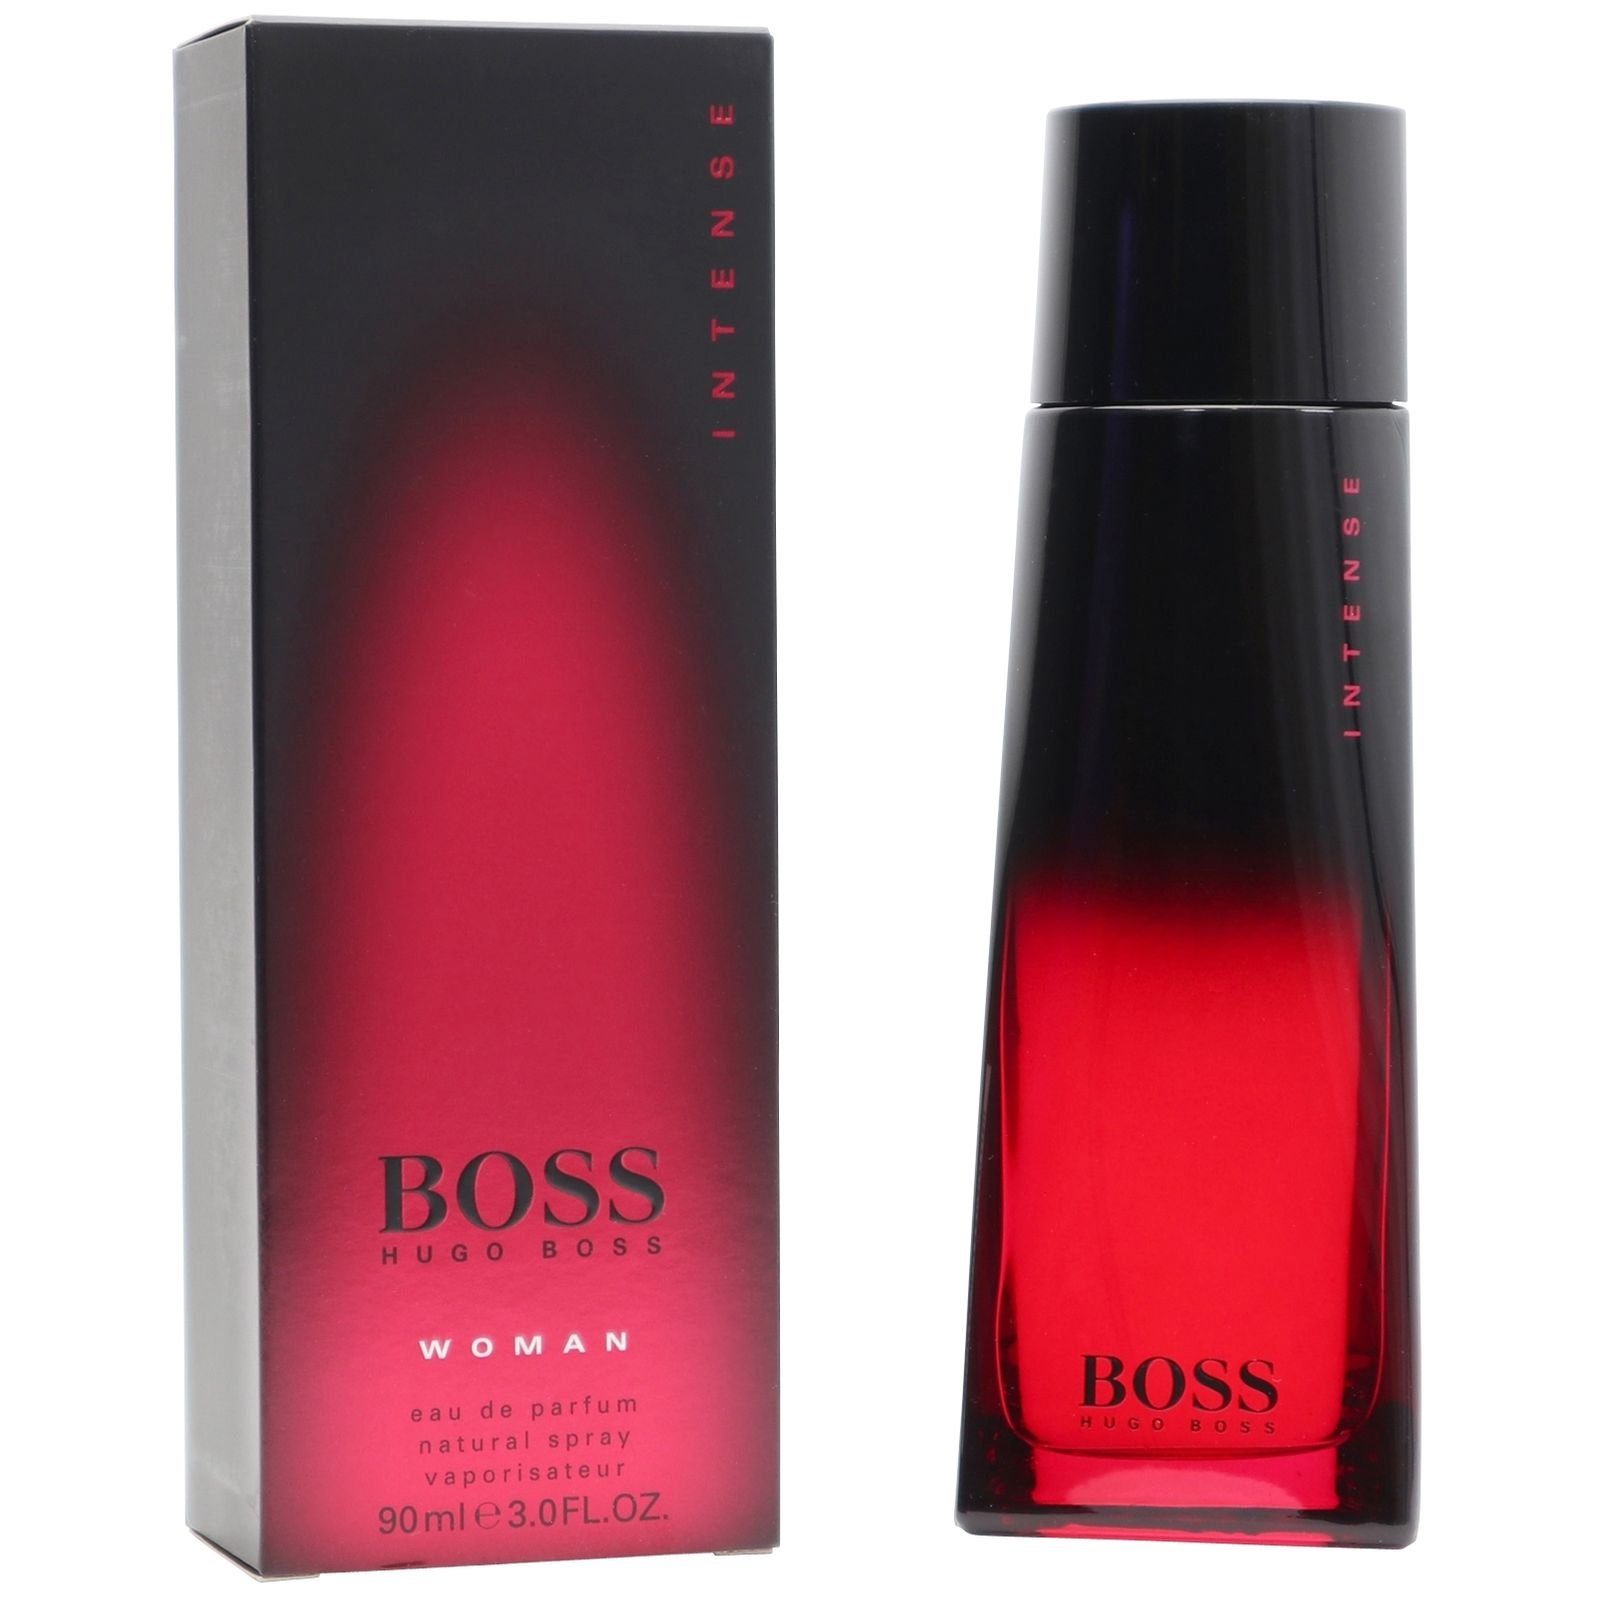 BOSS Eau de Parfum Hugo Boss Intense Woman Eau de Parfum Spray 90 ml